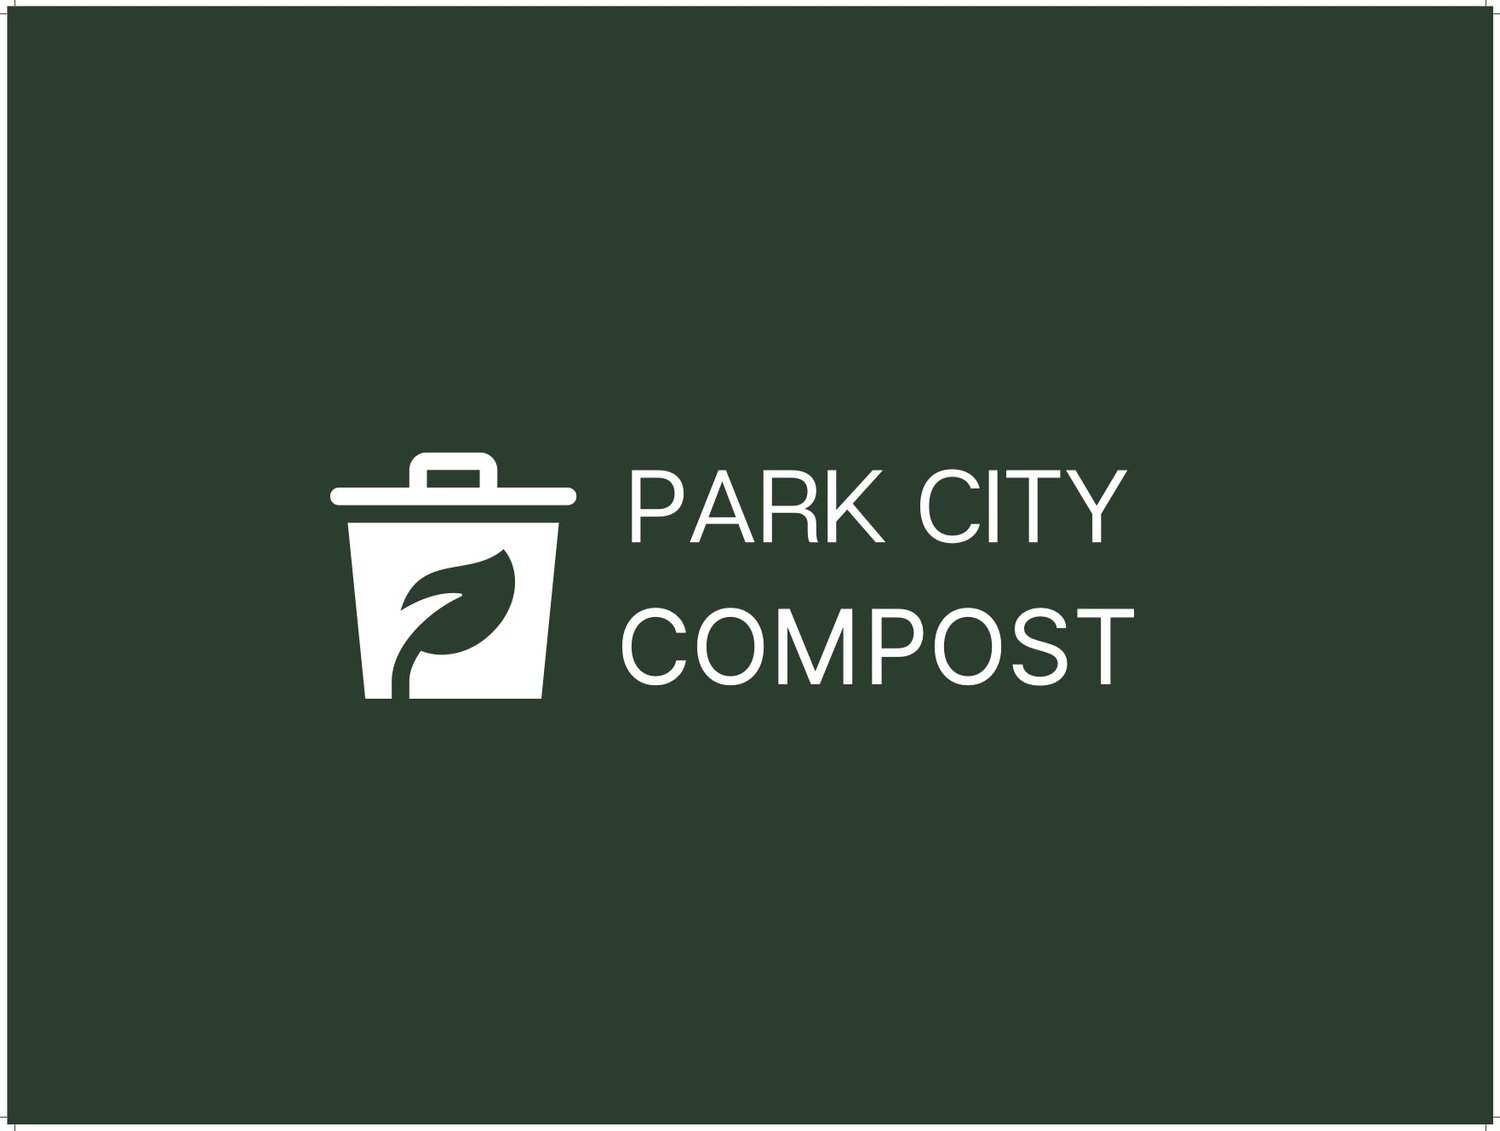 Park City Compost Initiative